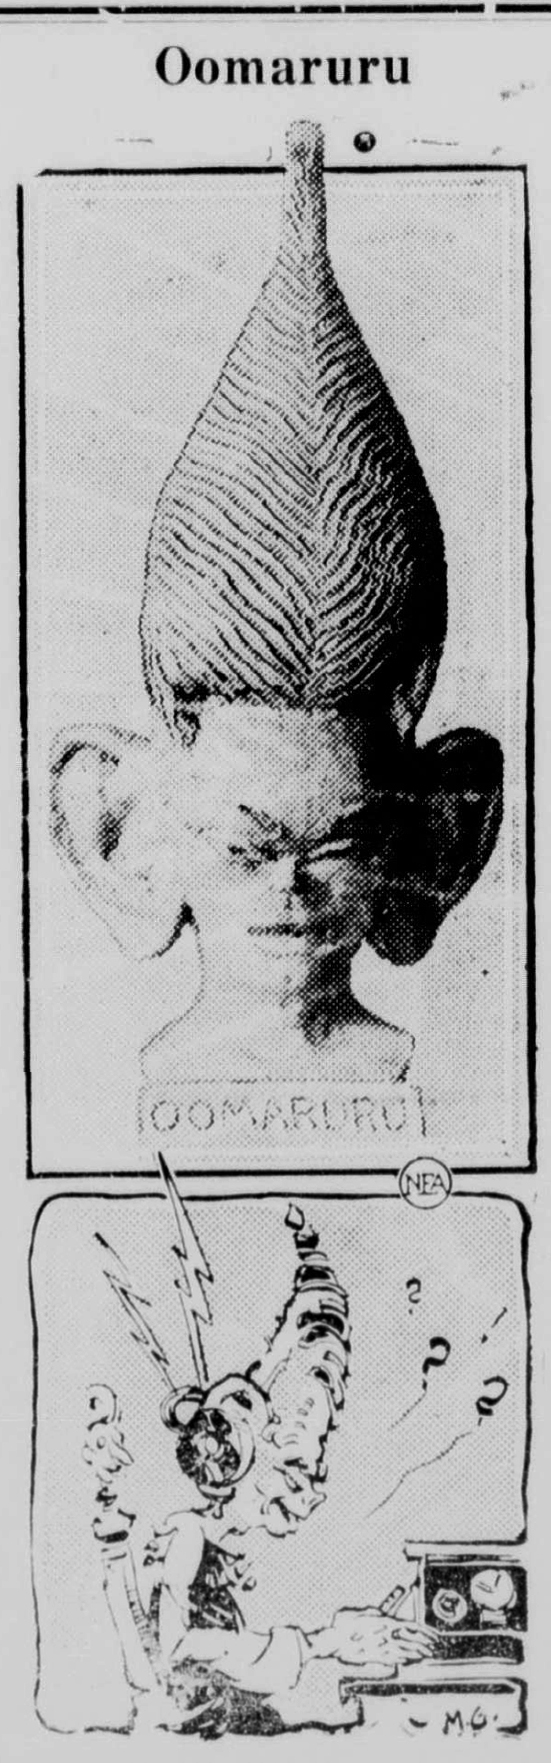 Oomaruru sketch, from the Healdsburg Tribune, November 10, 1928.